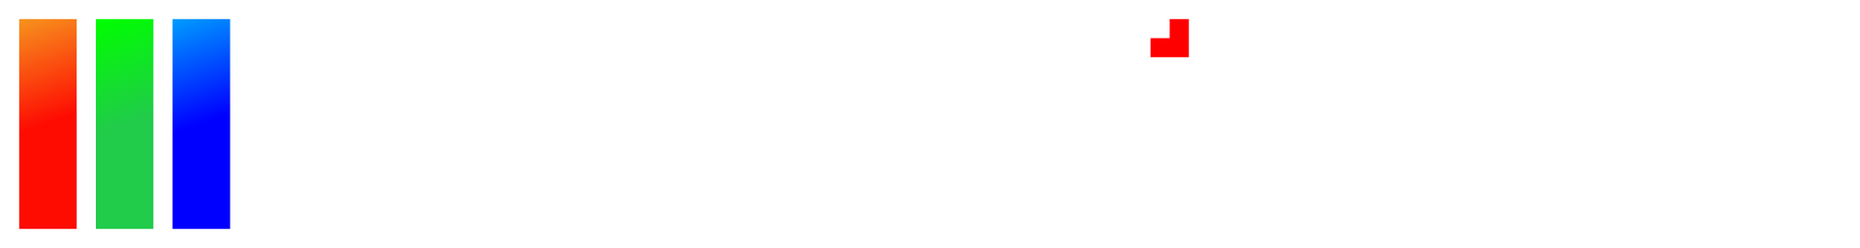 Interpixel logo